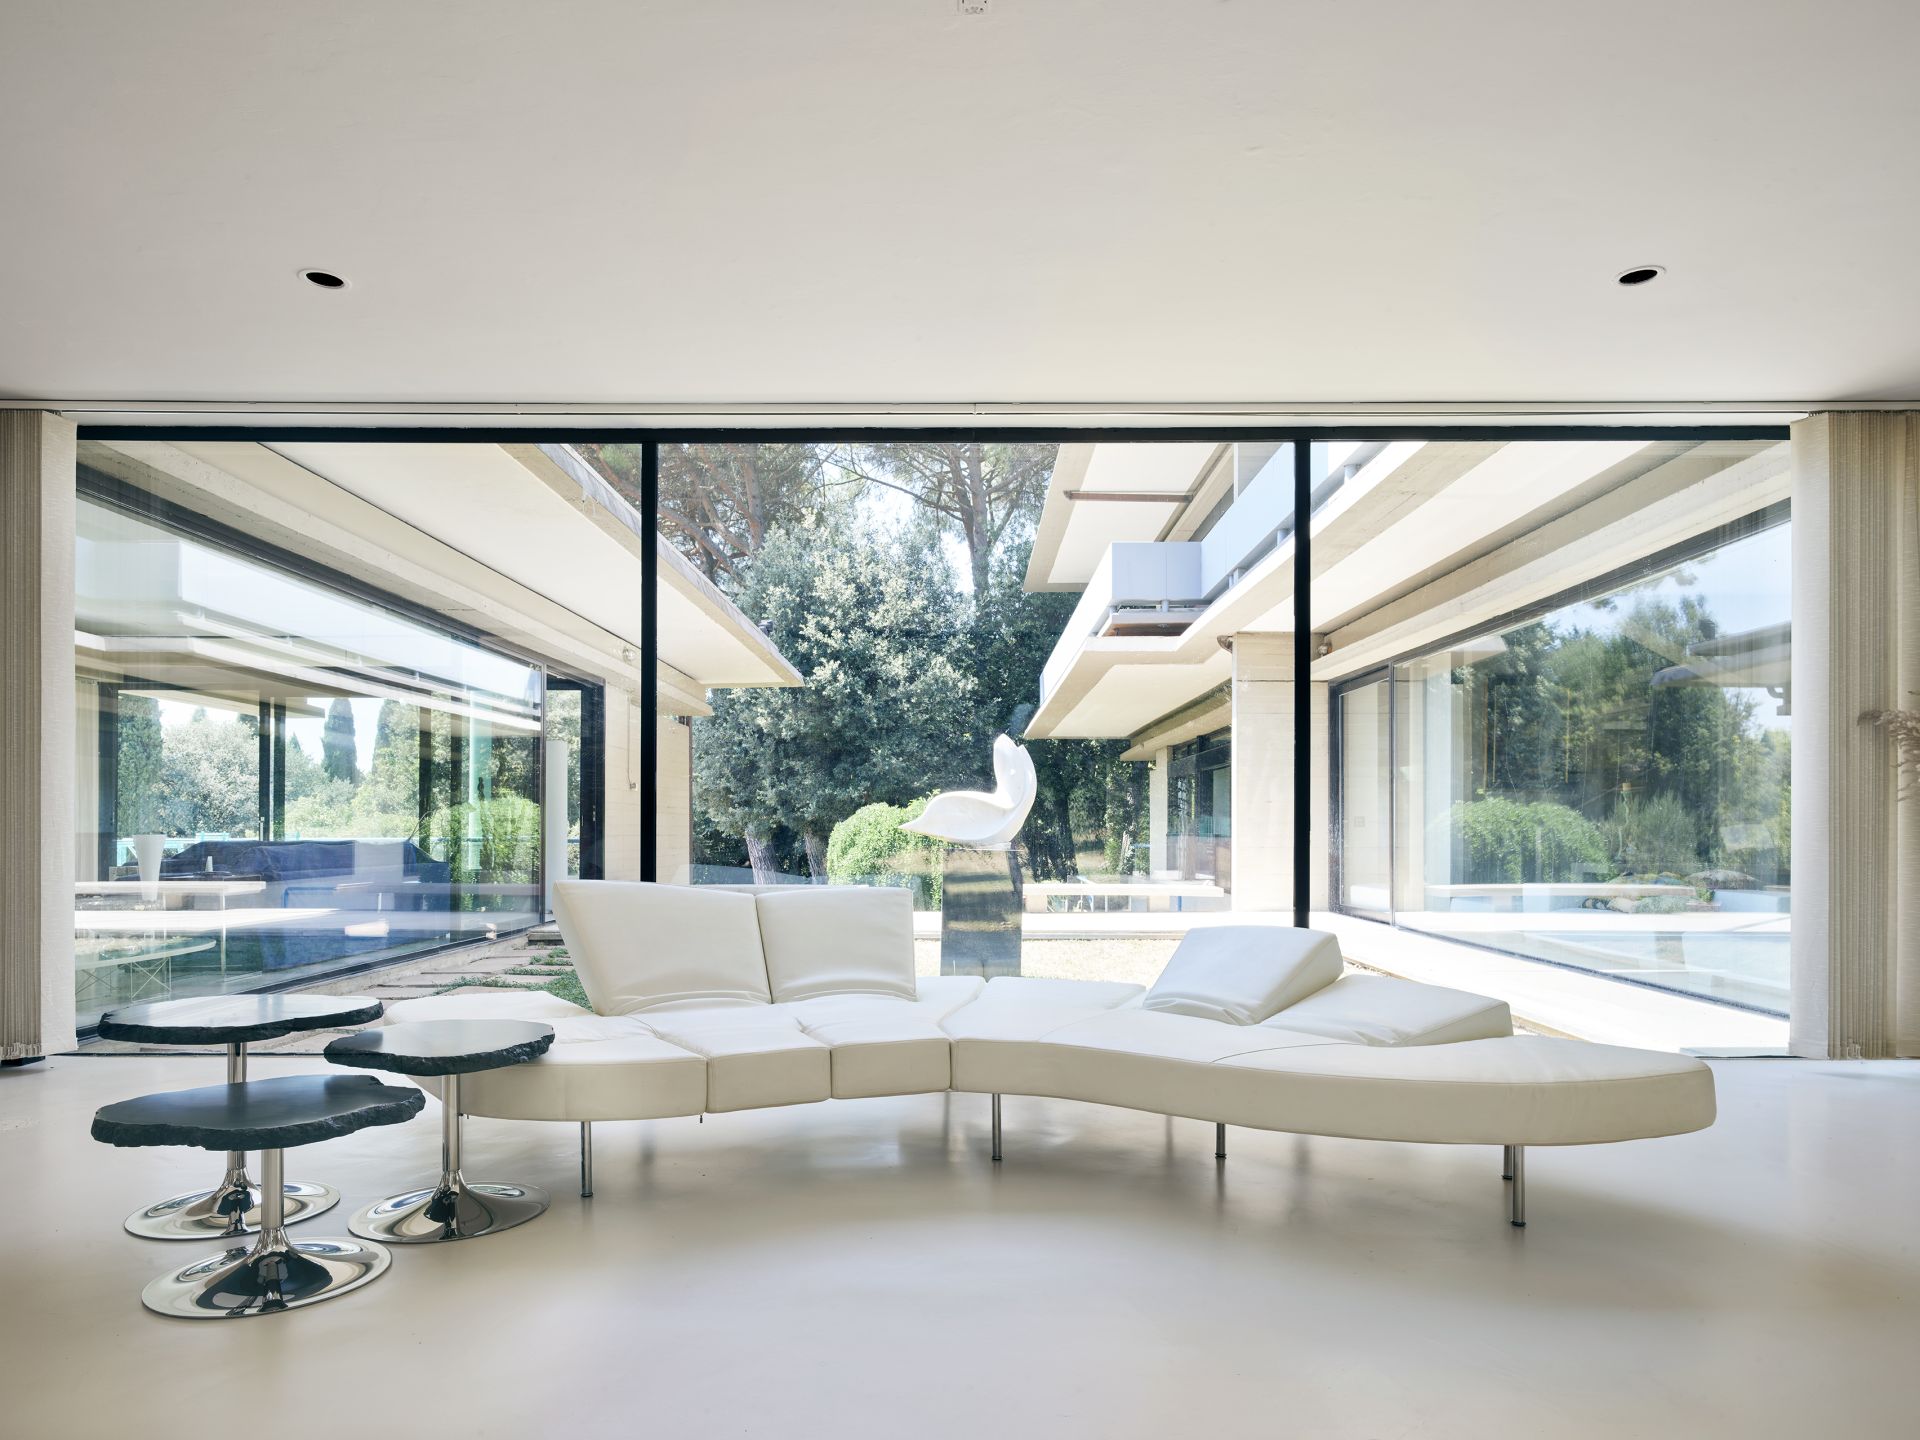 Villa in cemento e vetro immersa nel verde - Arch. Alberto Paoli - image 1